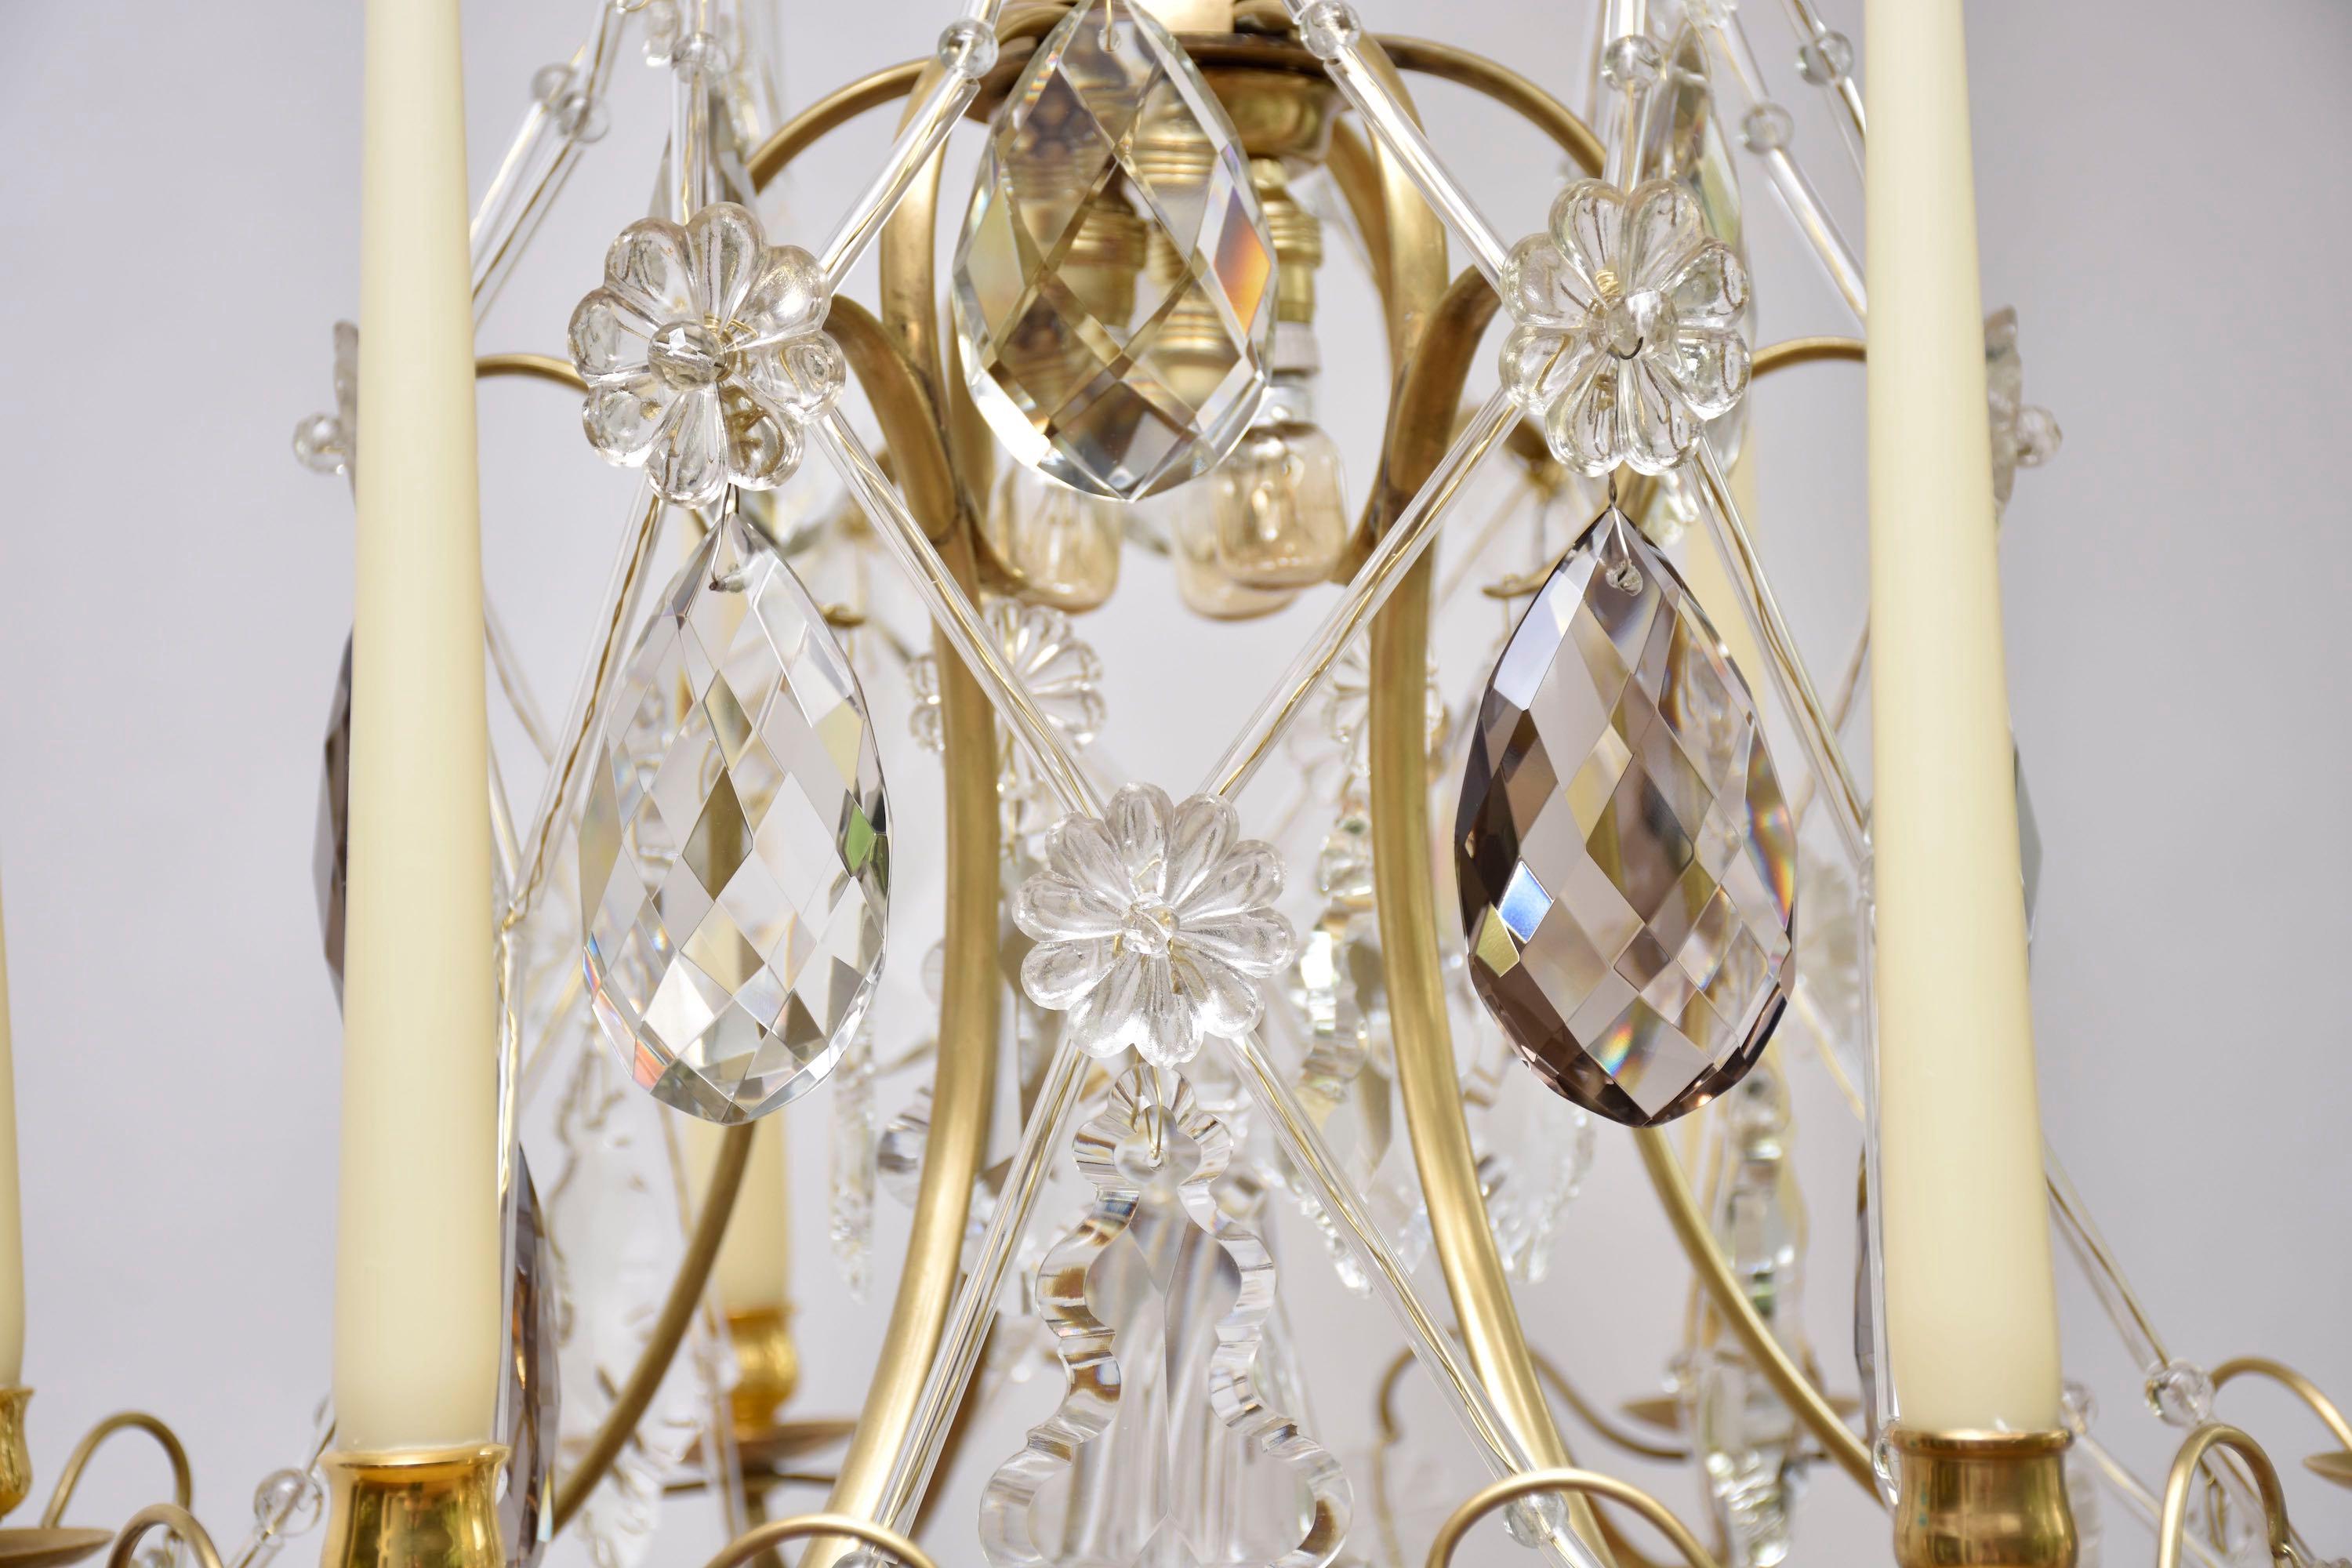 Ein eleganter nordeuropäischer Rokoko-Kronleuchter mit 3 kleinen Innenleuchten und 6 Kerzenarmen.
Verziert mit mehreren Pendeloques in klarem und zartfarbigem böhmischem Kristall, Blumenrosetten und Sternen. Sehr schön und dekorativ sind die